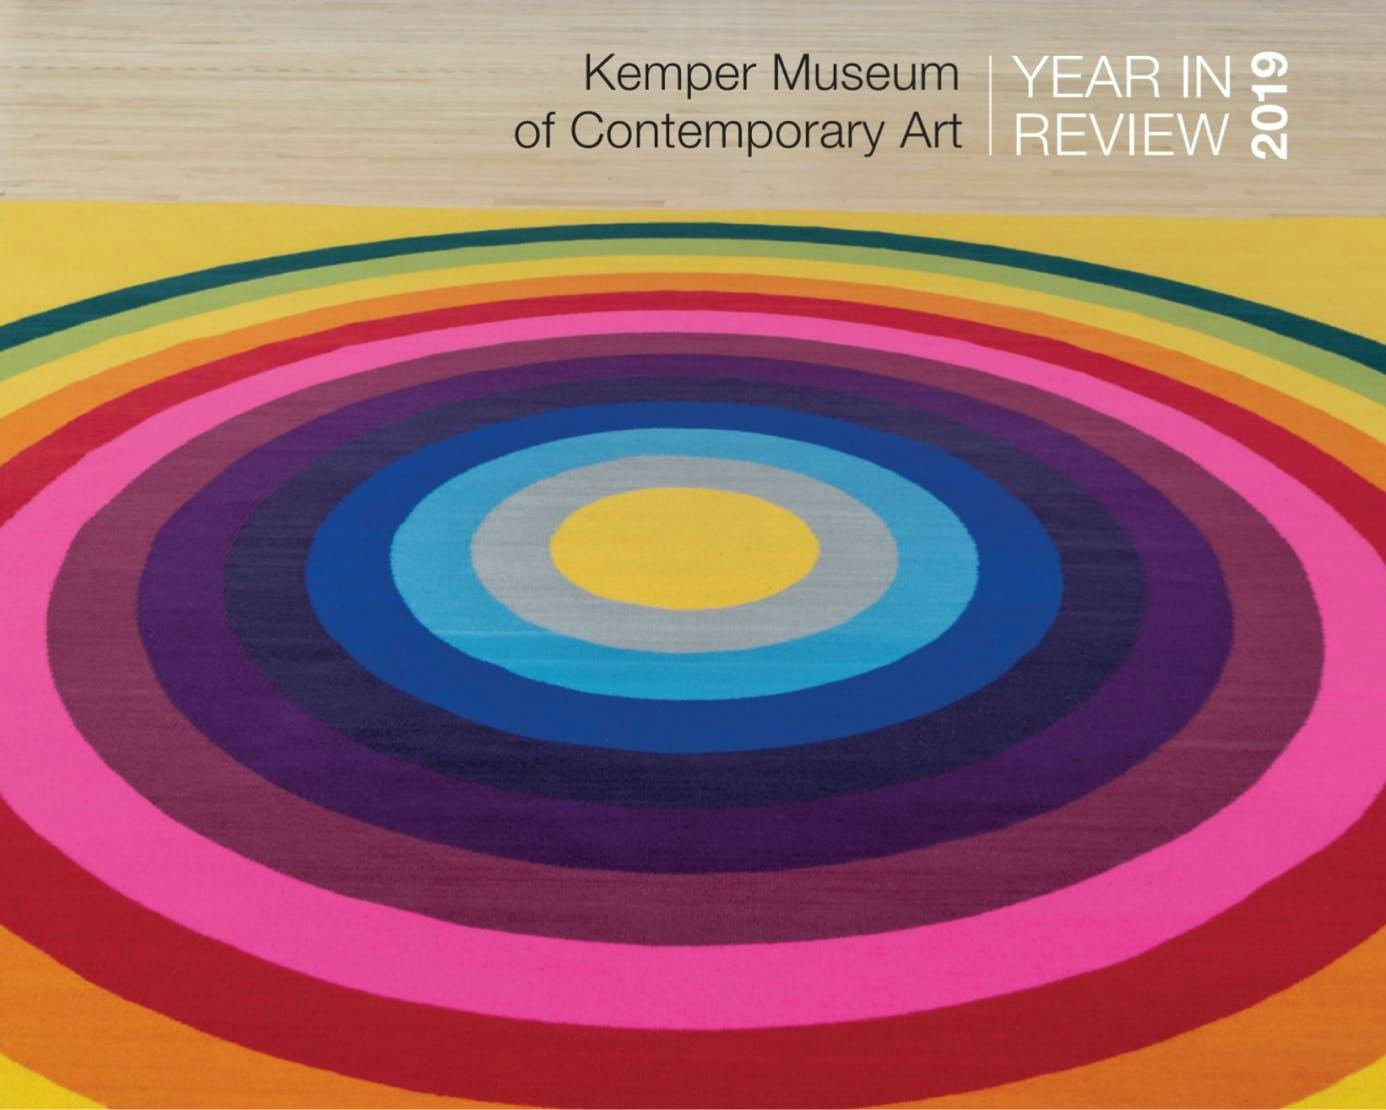 Kemper Museum Annual Report 2019